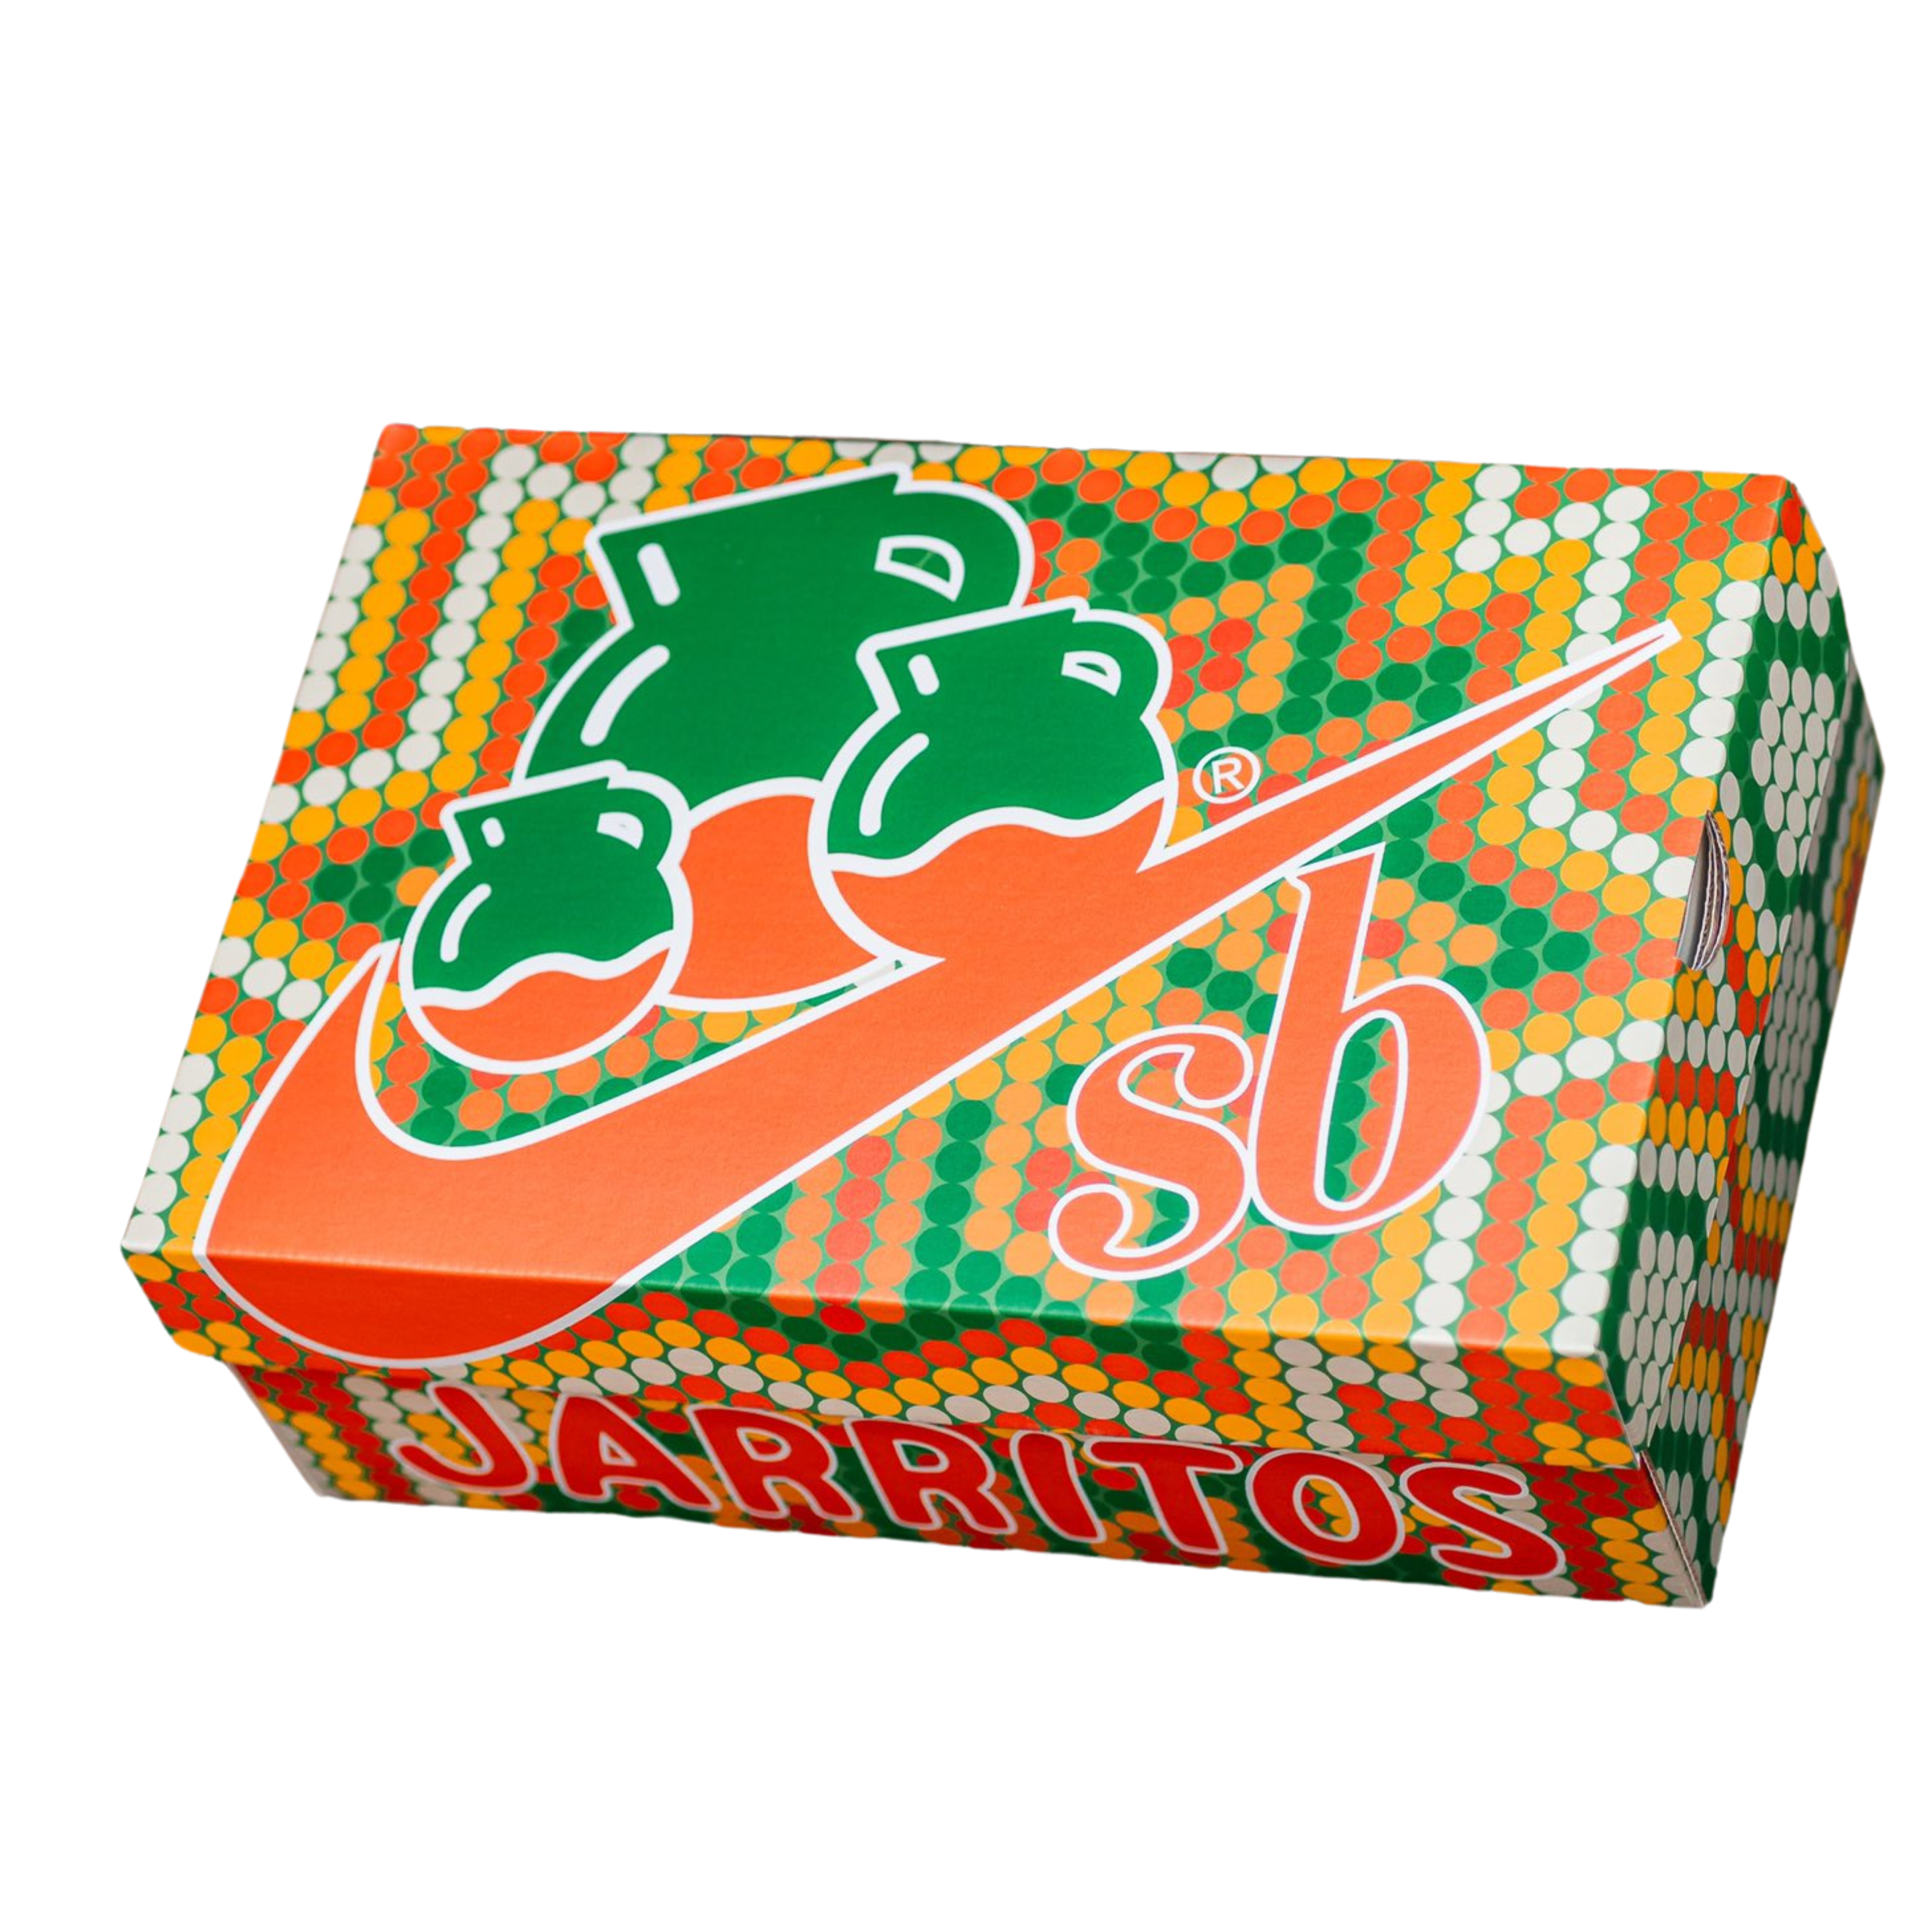 SB Dunk Low Jarritos (Special Box)